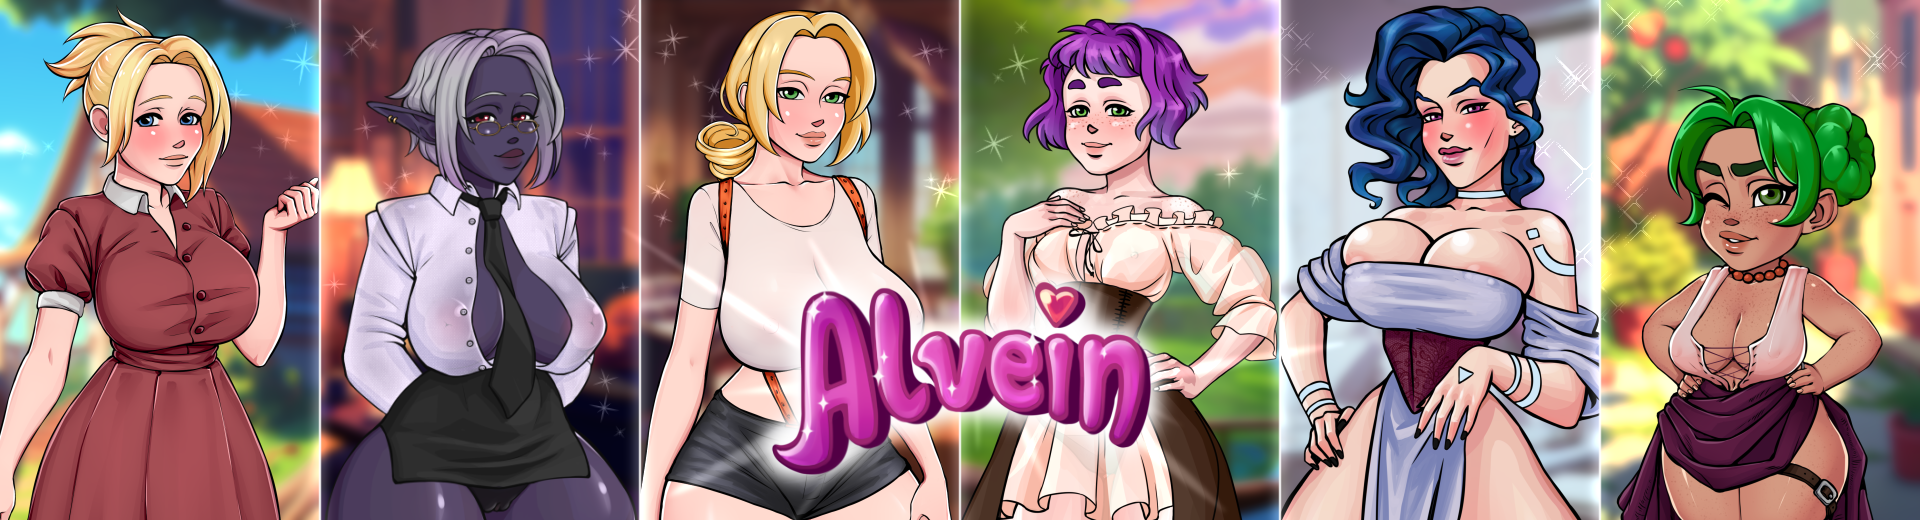 [18+ EN] Alvein – Giải Cứu Và Chiếm Hữu Thể Xác Của Mọi Phụ Nữ Trong Thị Trấn | Android, PC